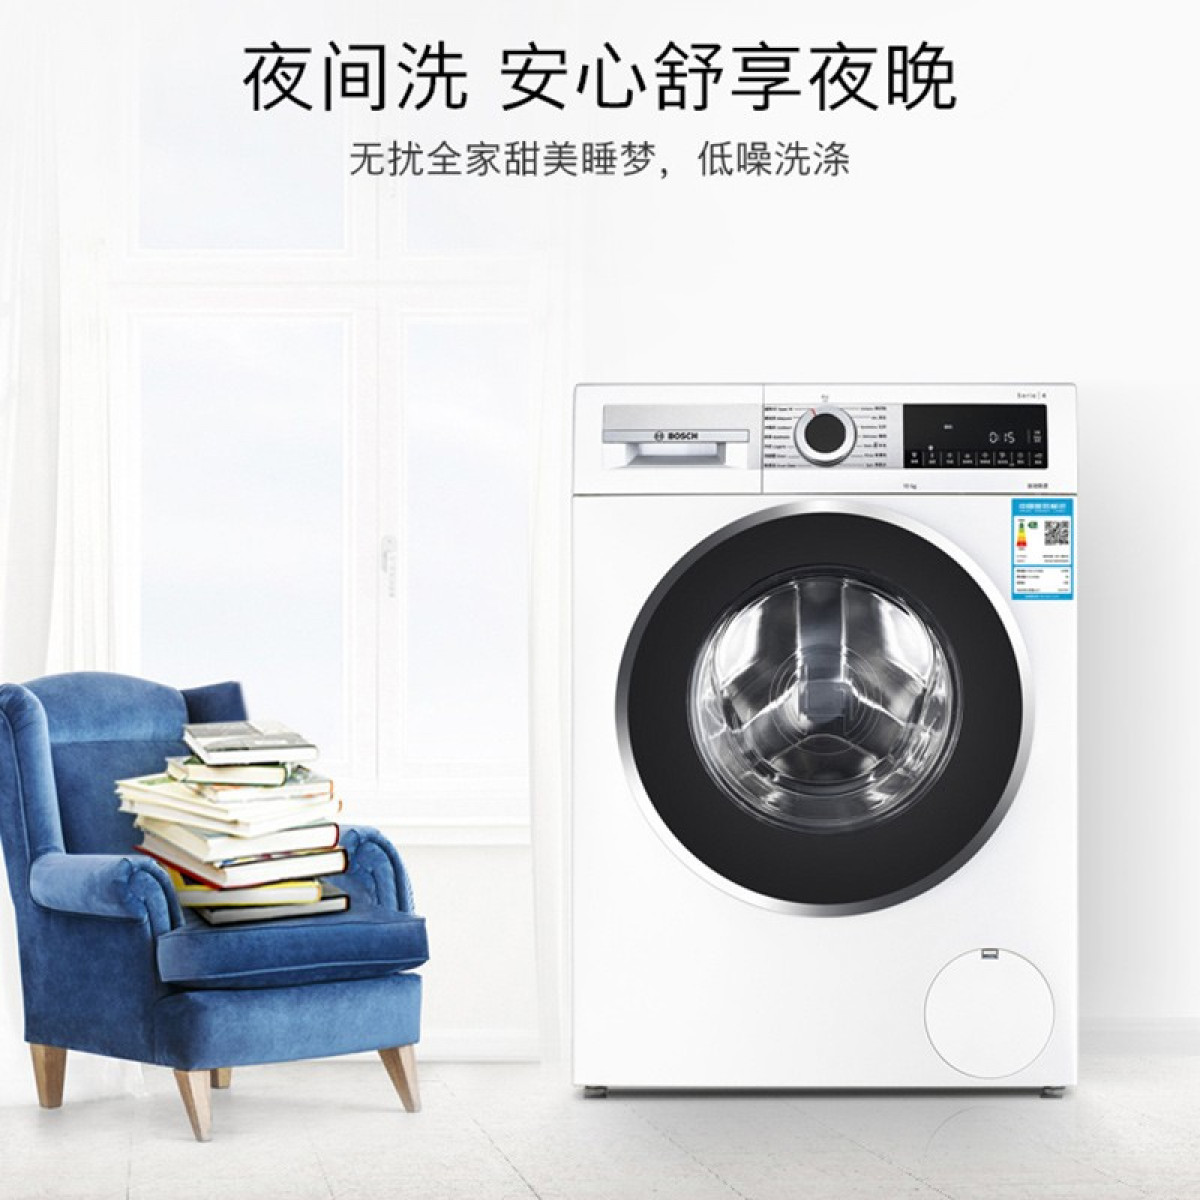 博世洗衣机/WBUM45000W